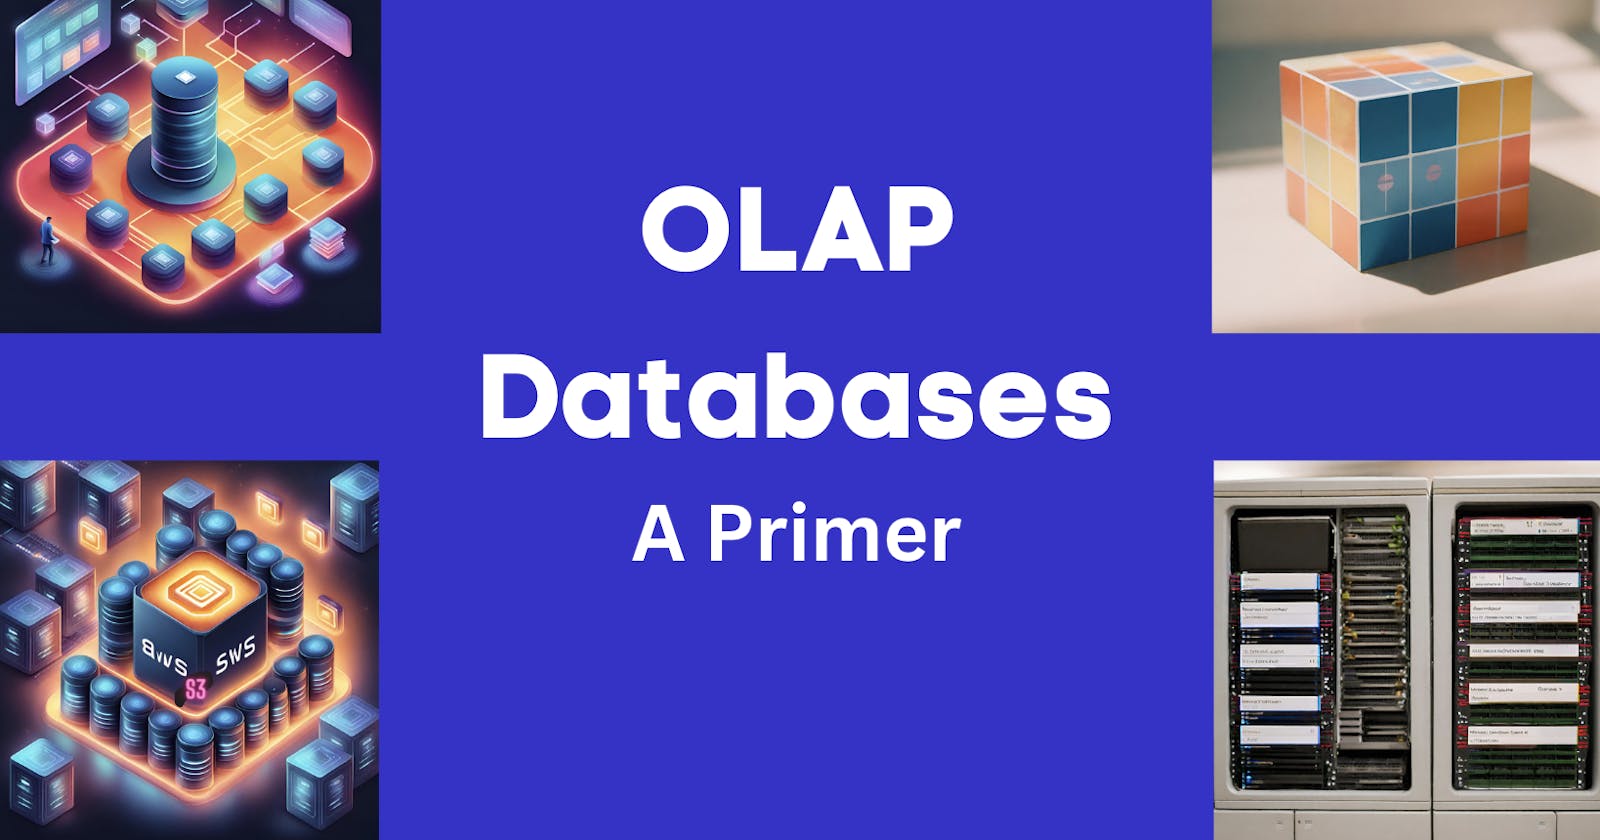 OLAP databases - A Primer